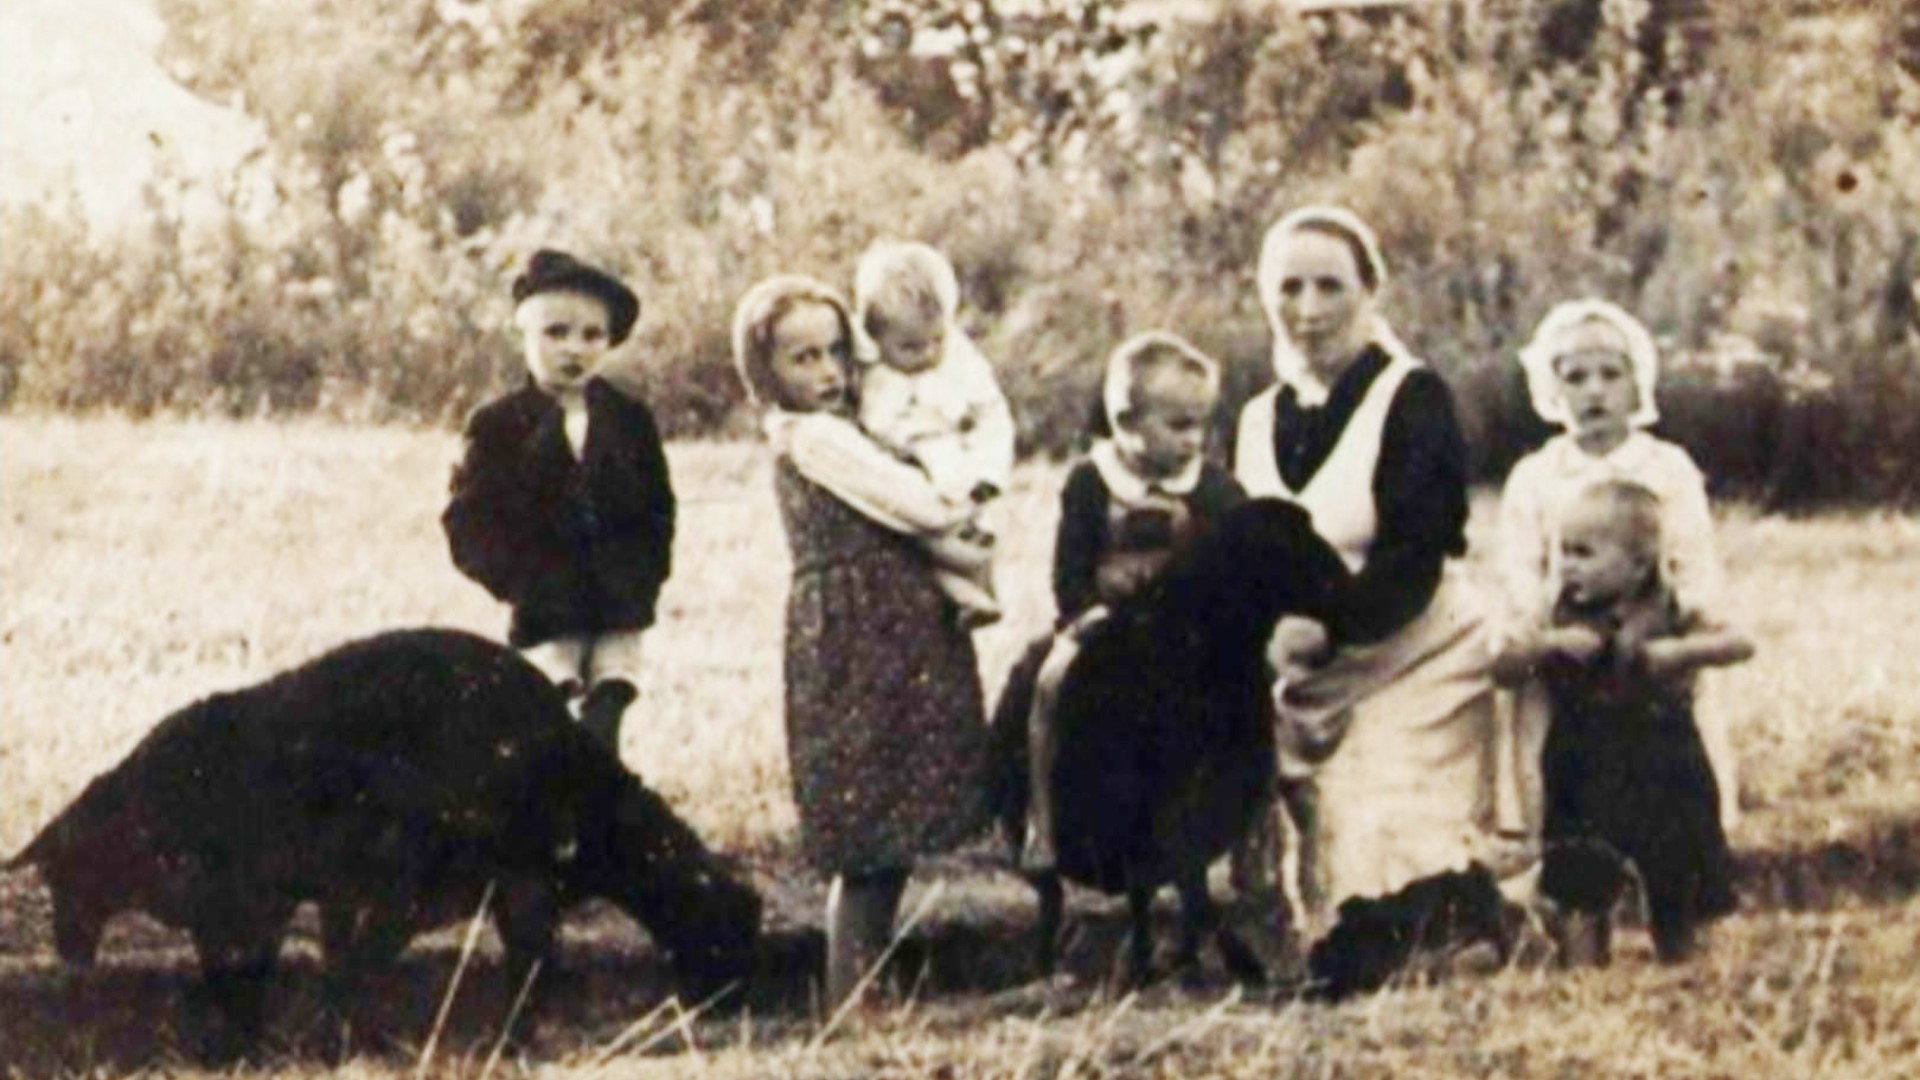 La famille Ulma, massacrée par les nazis | Image fournie par l'Avvenire (1)